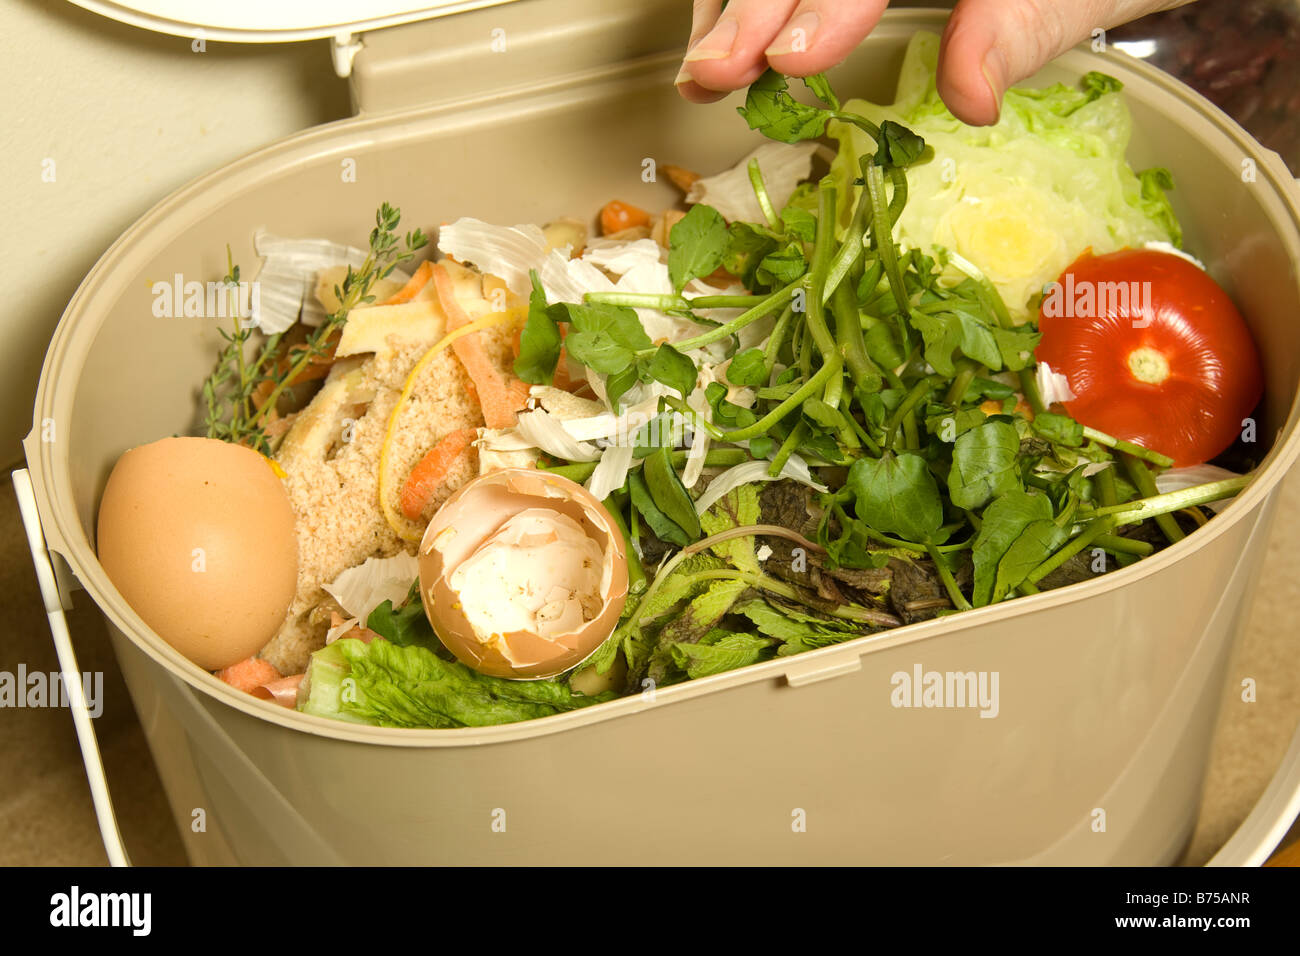 https://c8.alamy.com/comp/B75ANR/organic-recycling-kitchen-compost-pail-B75ANR.jpg